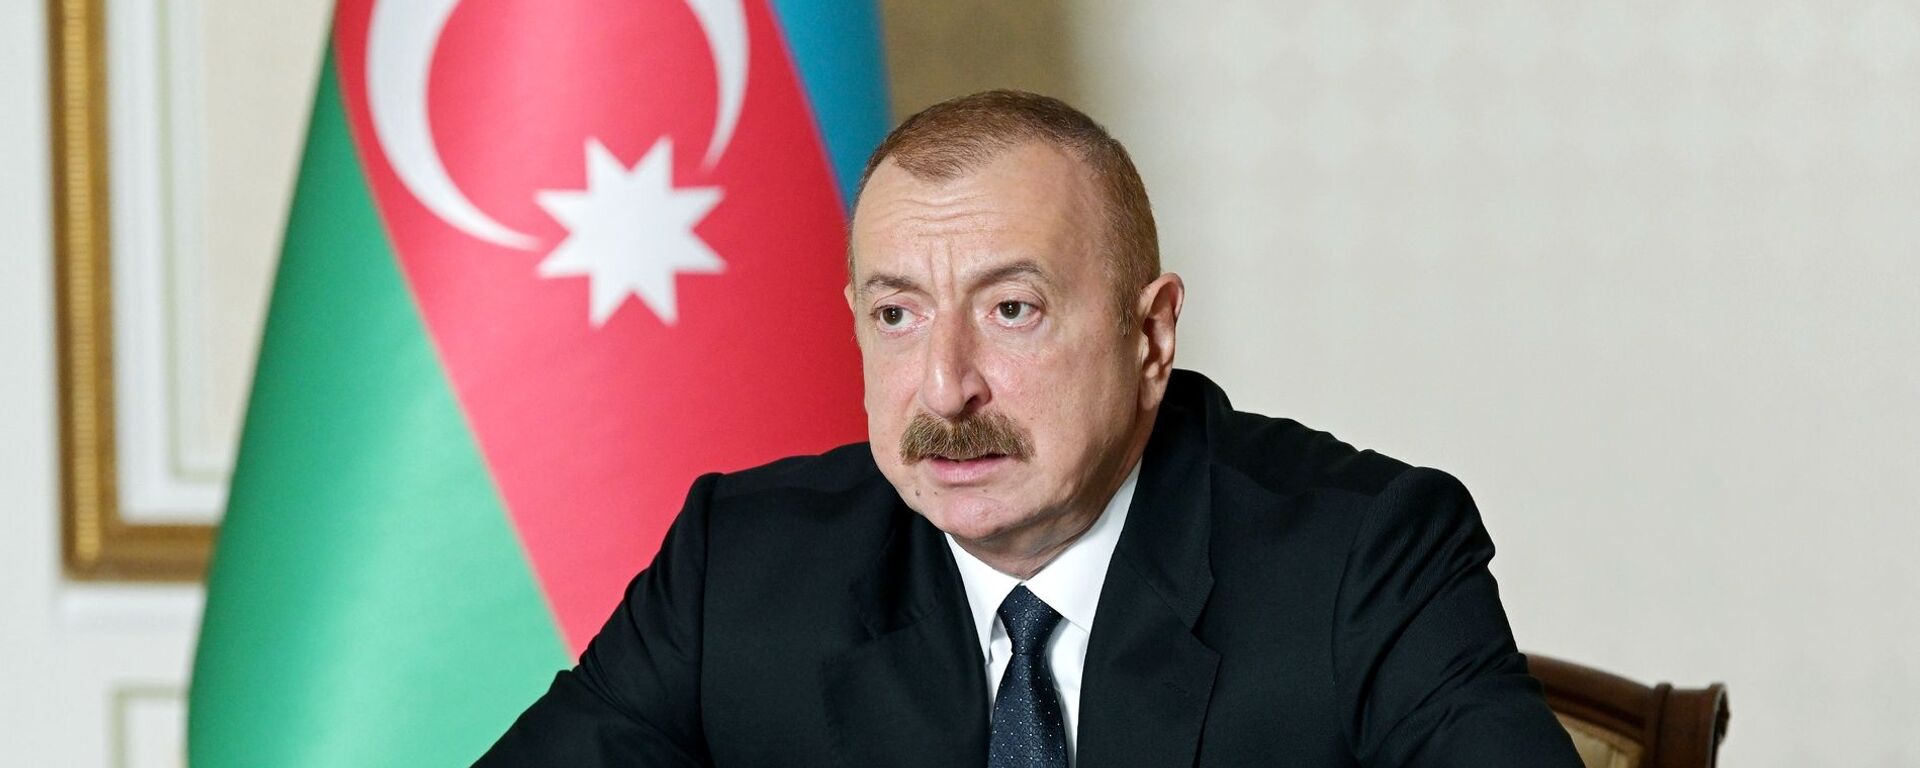 Iljam Alíev, presidente de Azerbaiyán - Sputnik Mundo, 1920, 18.05.2022